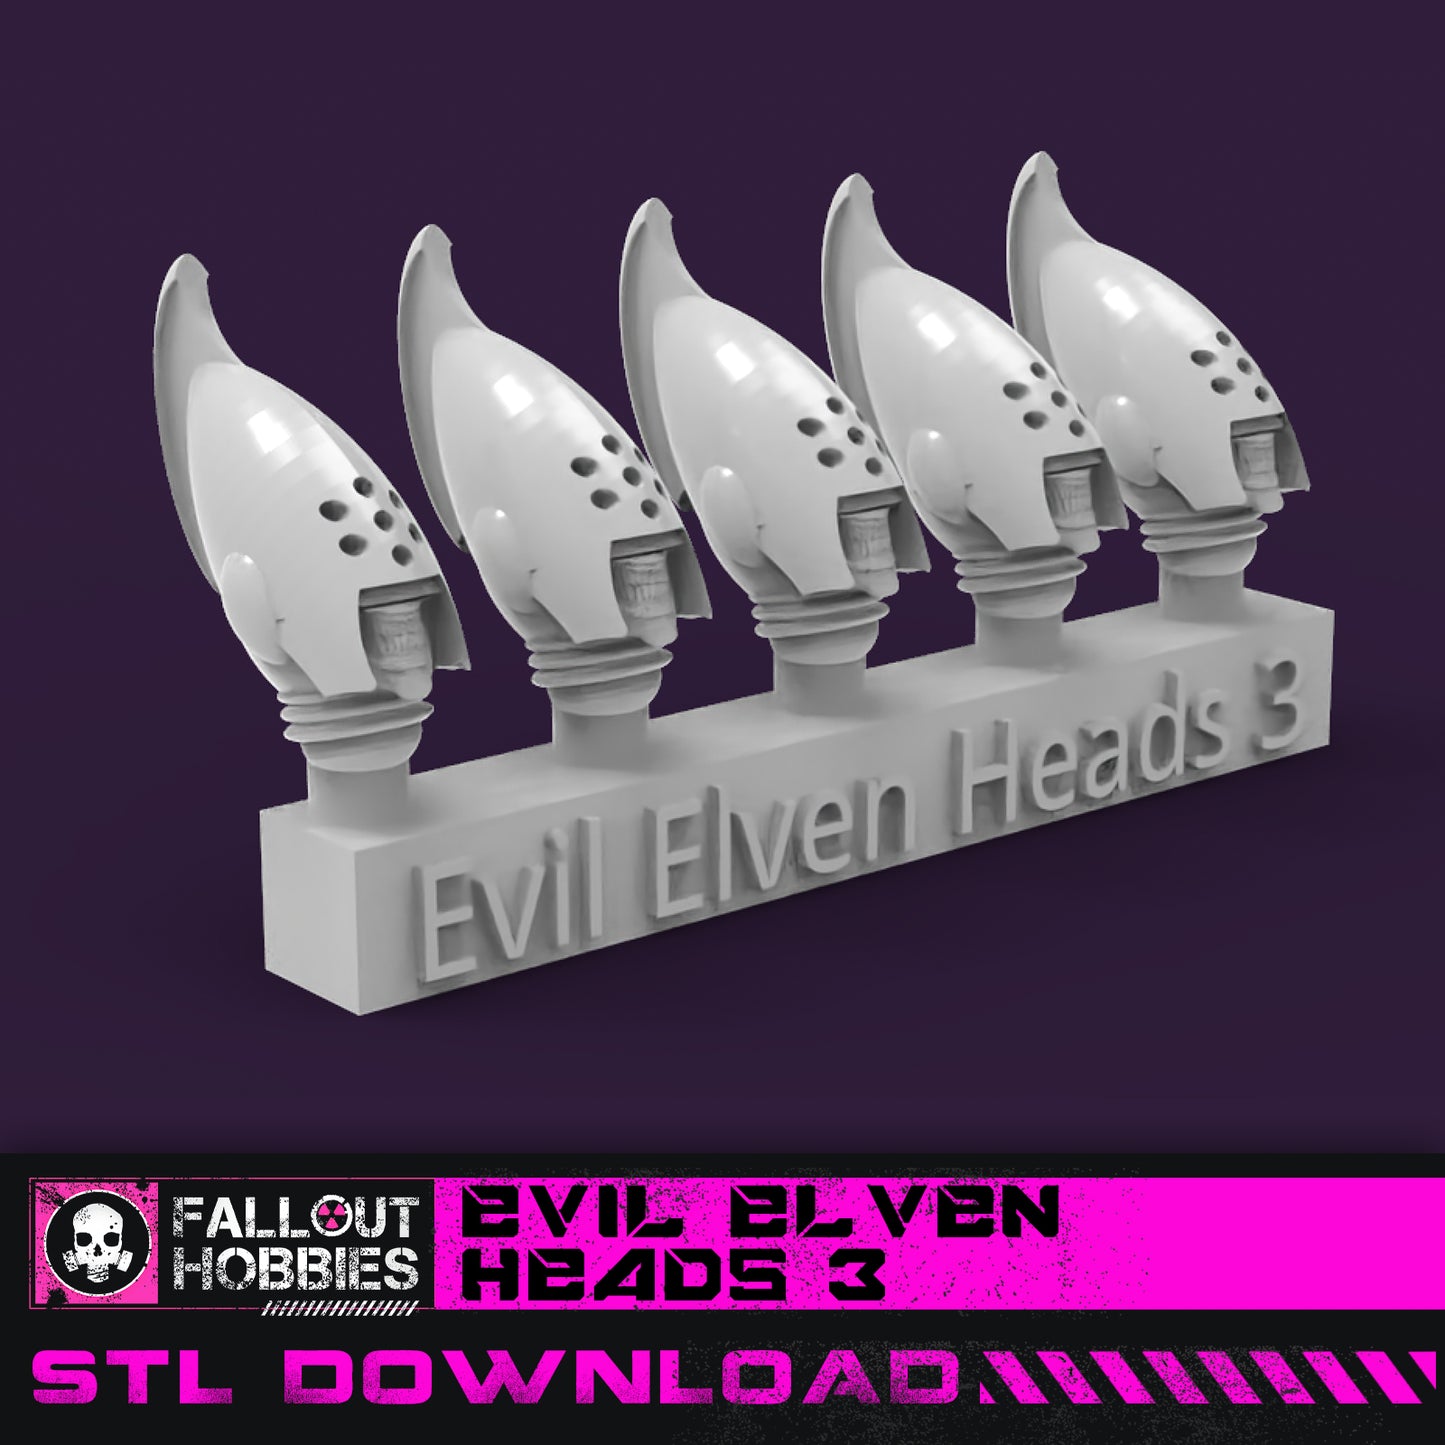 Evil Elven Heads 3 STL File Download